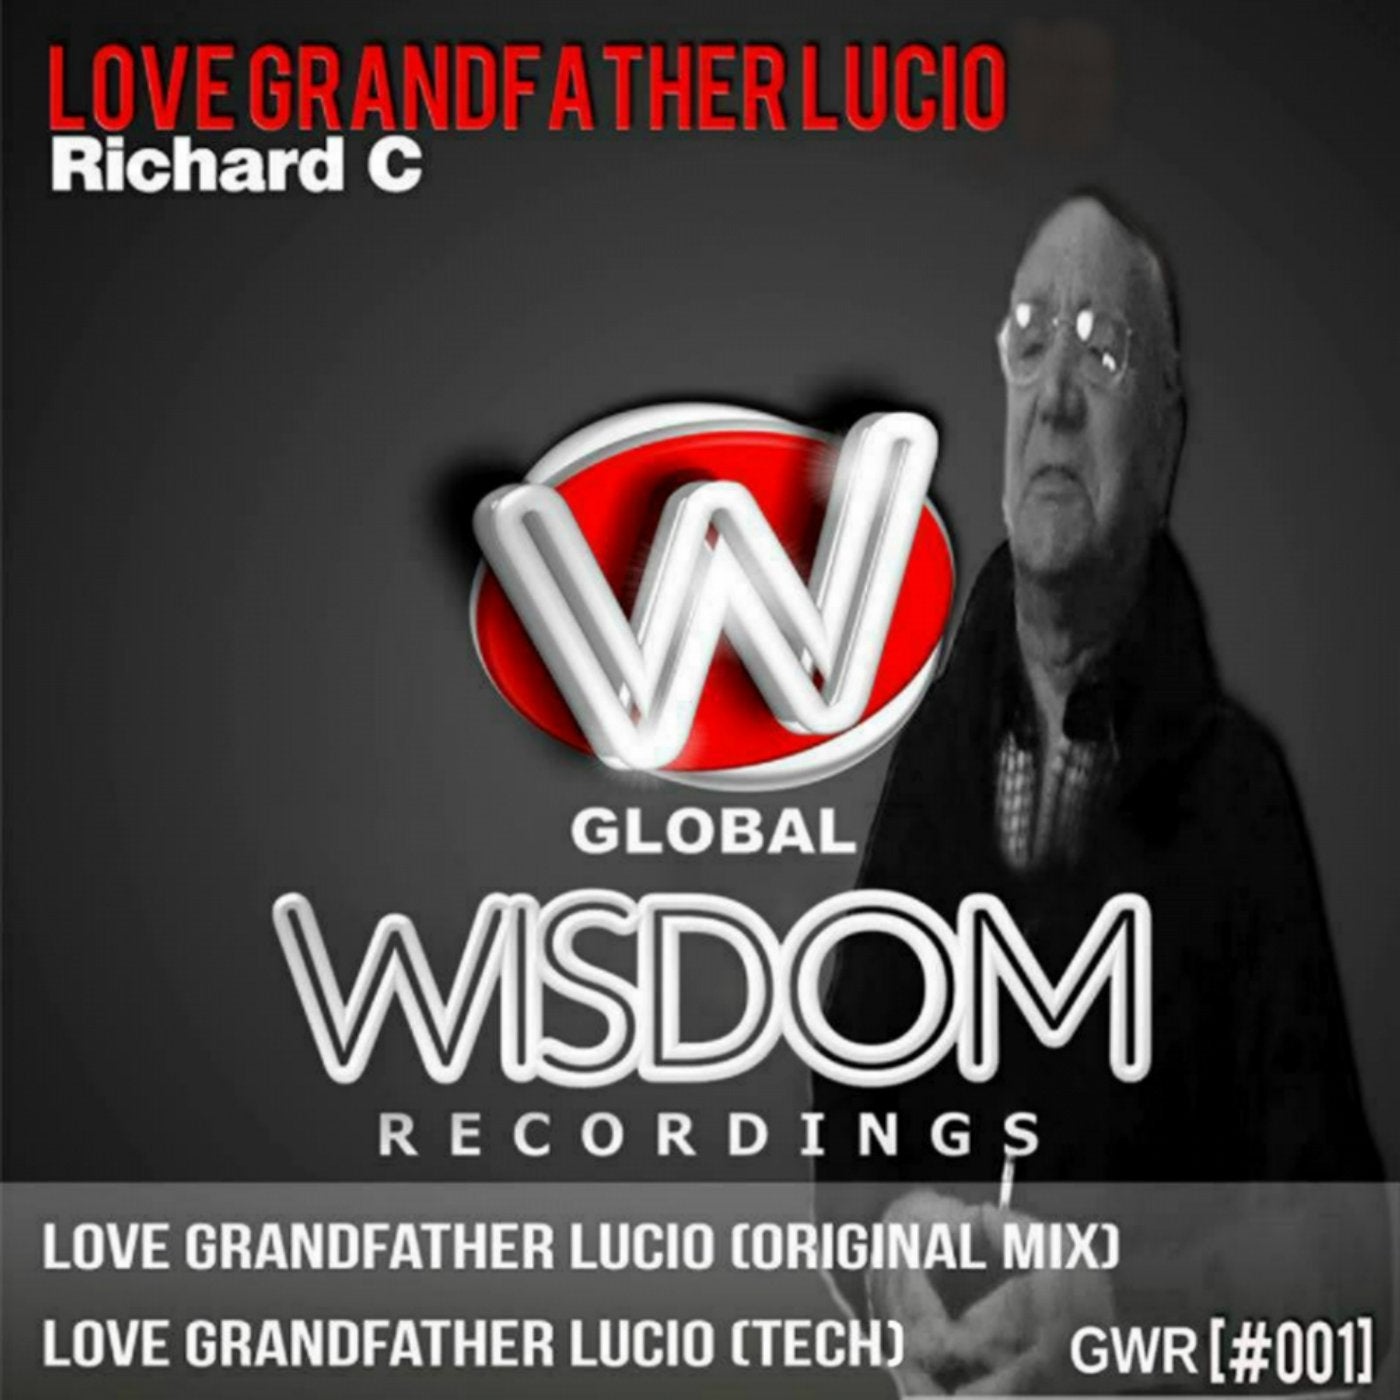 Love Grandfather Lucio